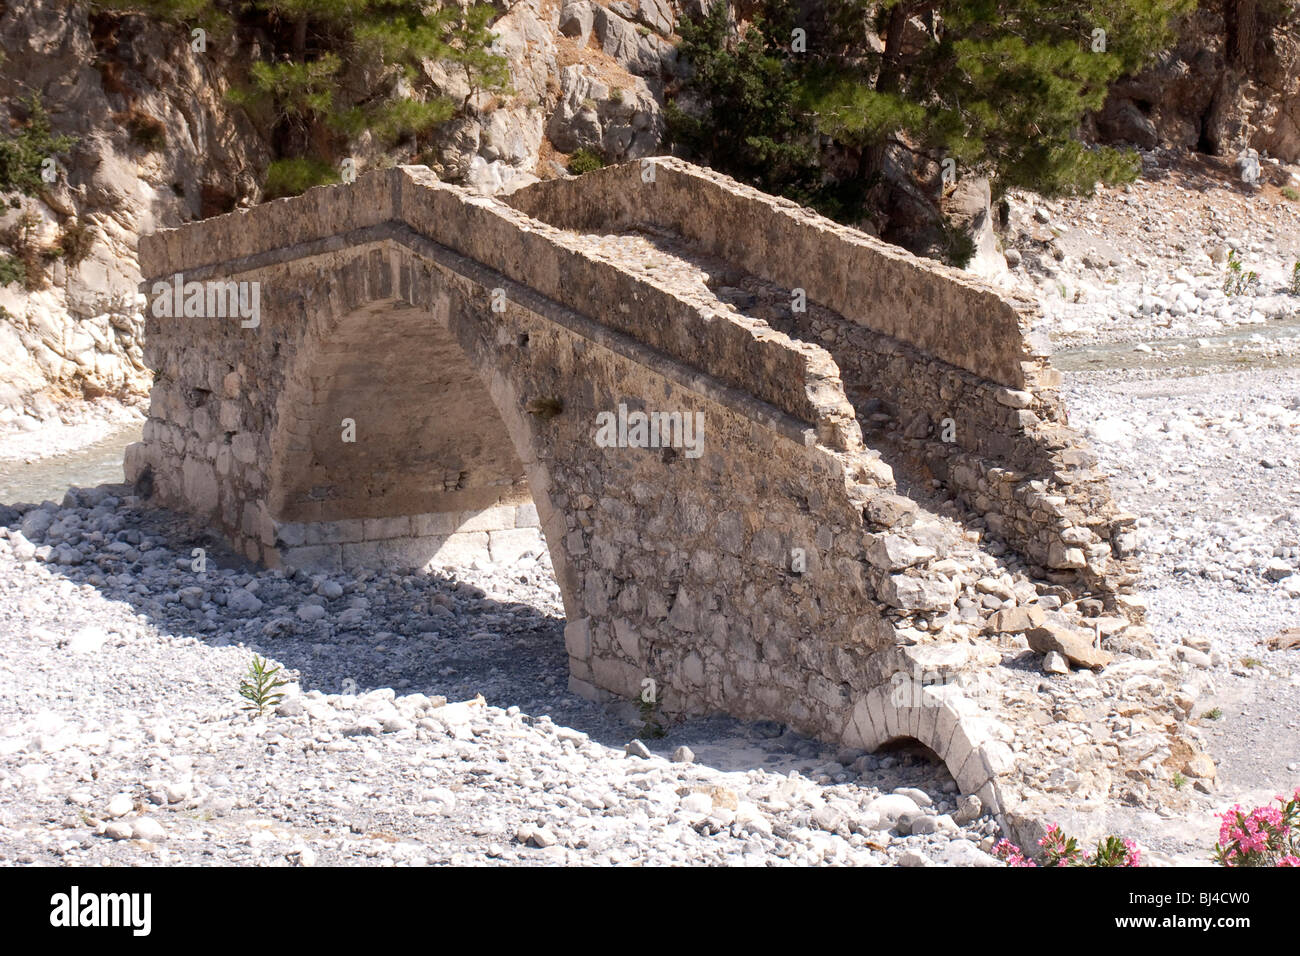 Un vecchio ponte dal periodo romano abbraccia il letto asciutto del fiume nella gola di Samaria in Agia Roumeli, Creta, Grecia, Europa tarato Foto Stock